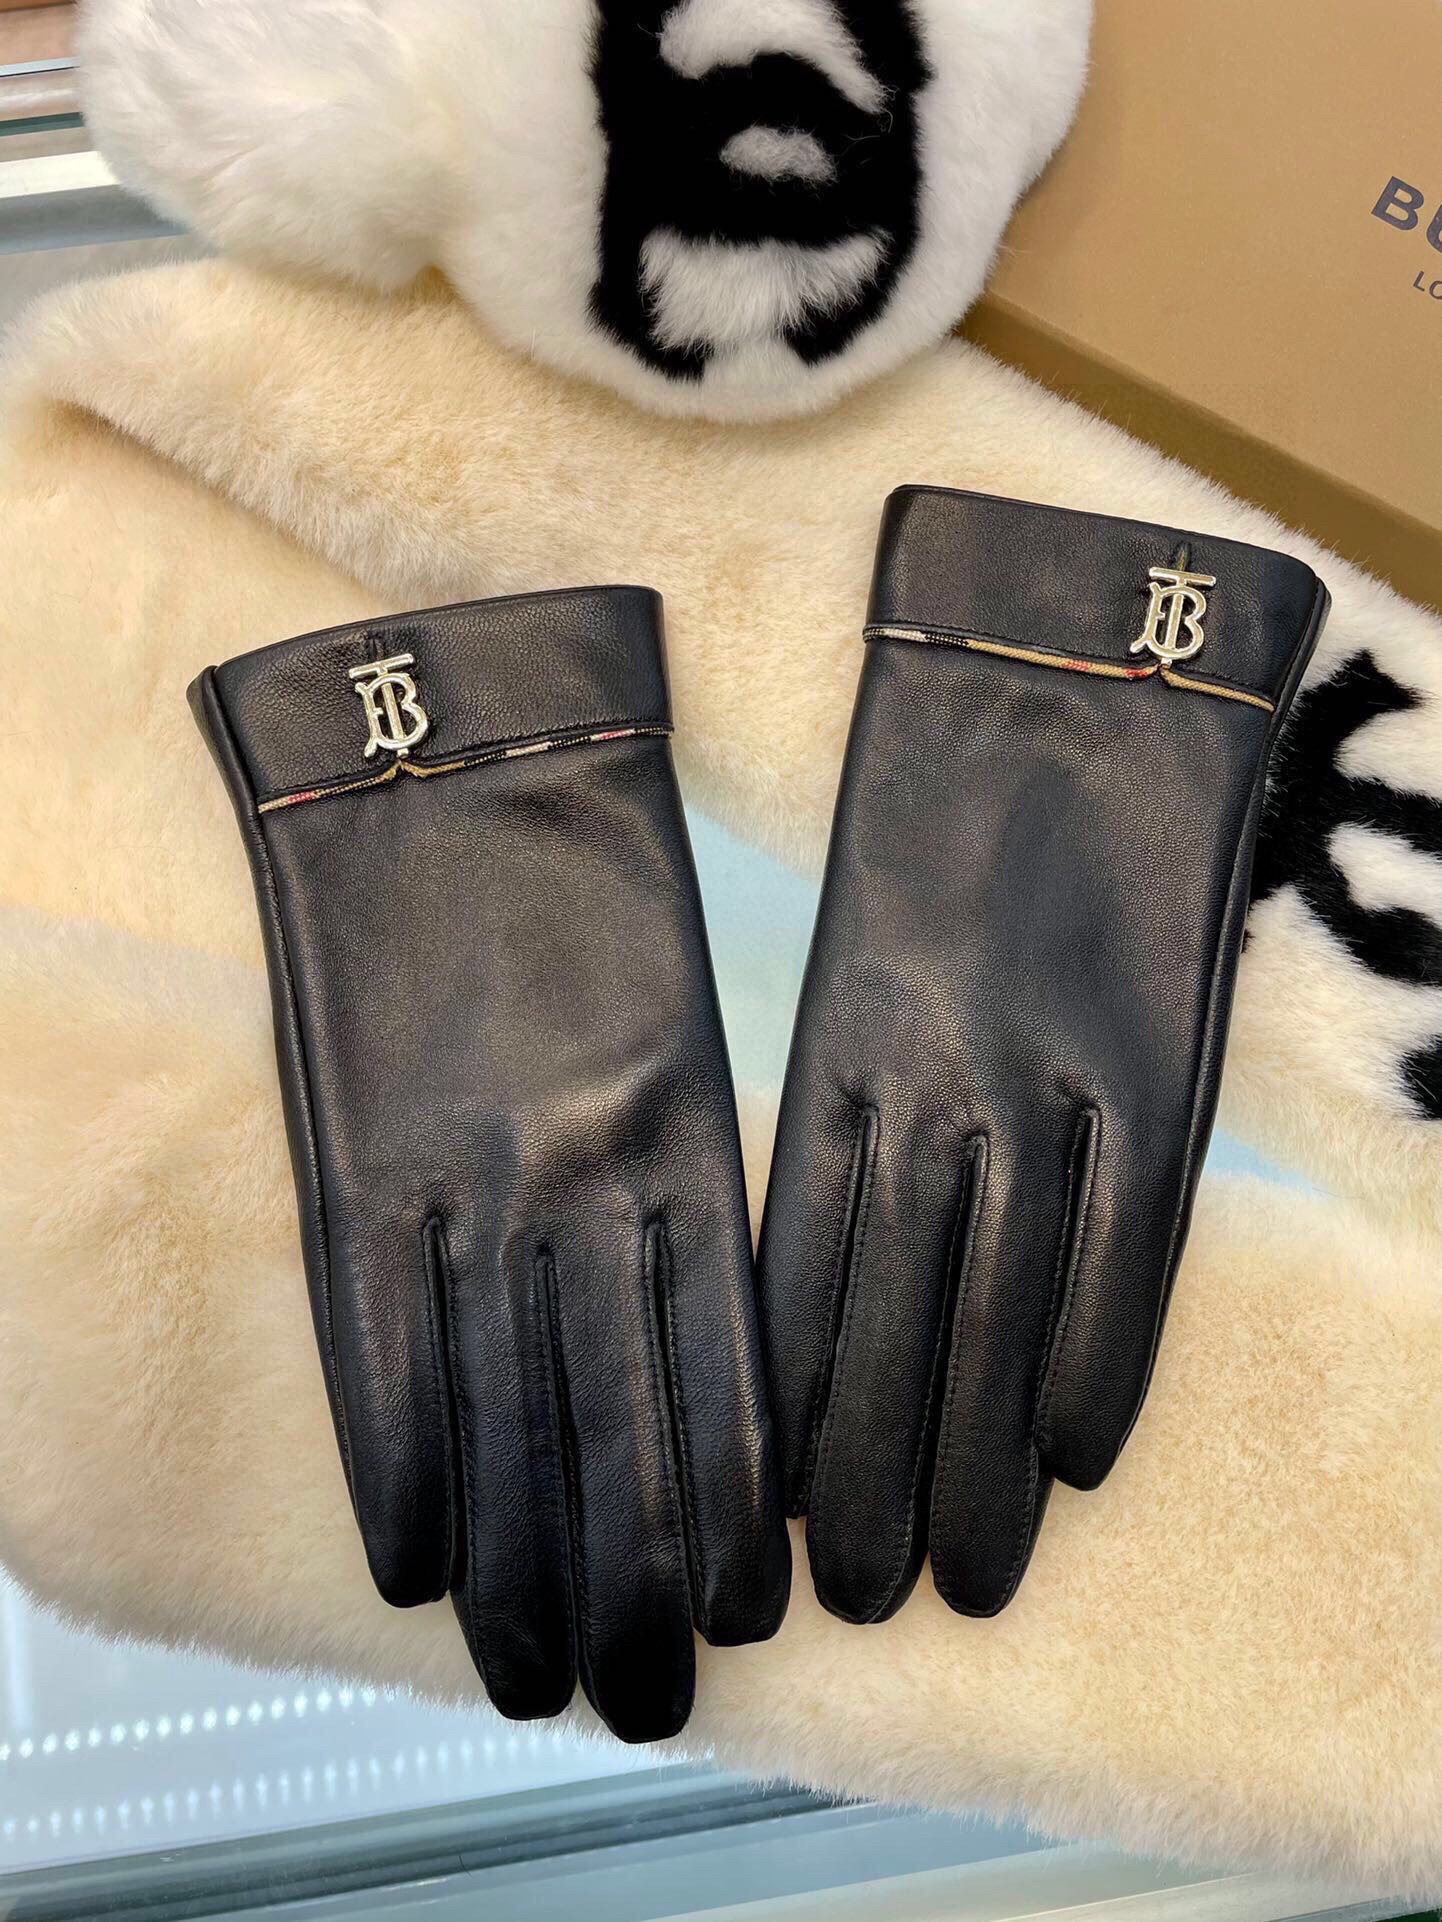 巴宝莉新款女士手套一级羊皮皮质超薄柔软舒适特显手型质感超群码数ML